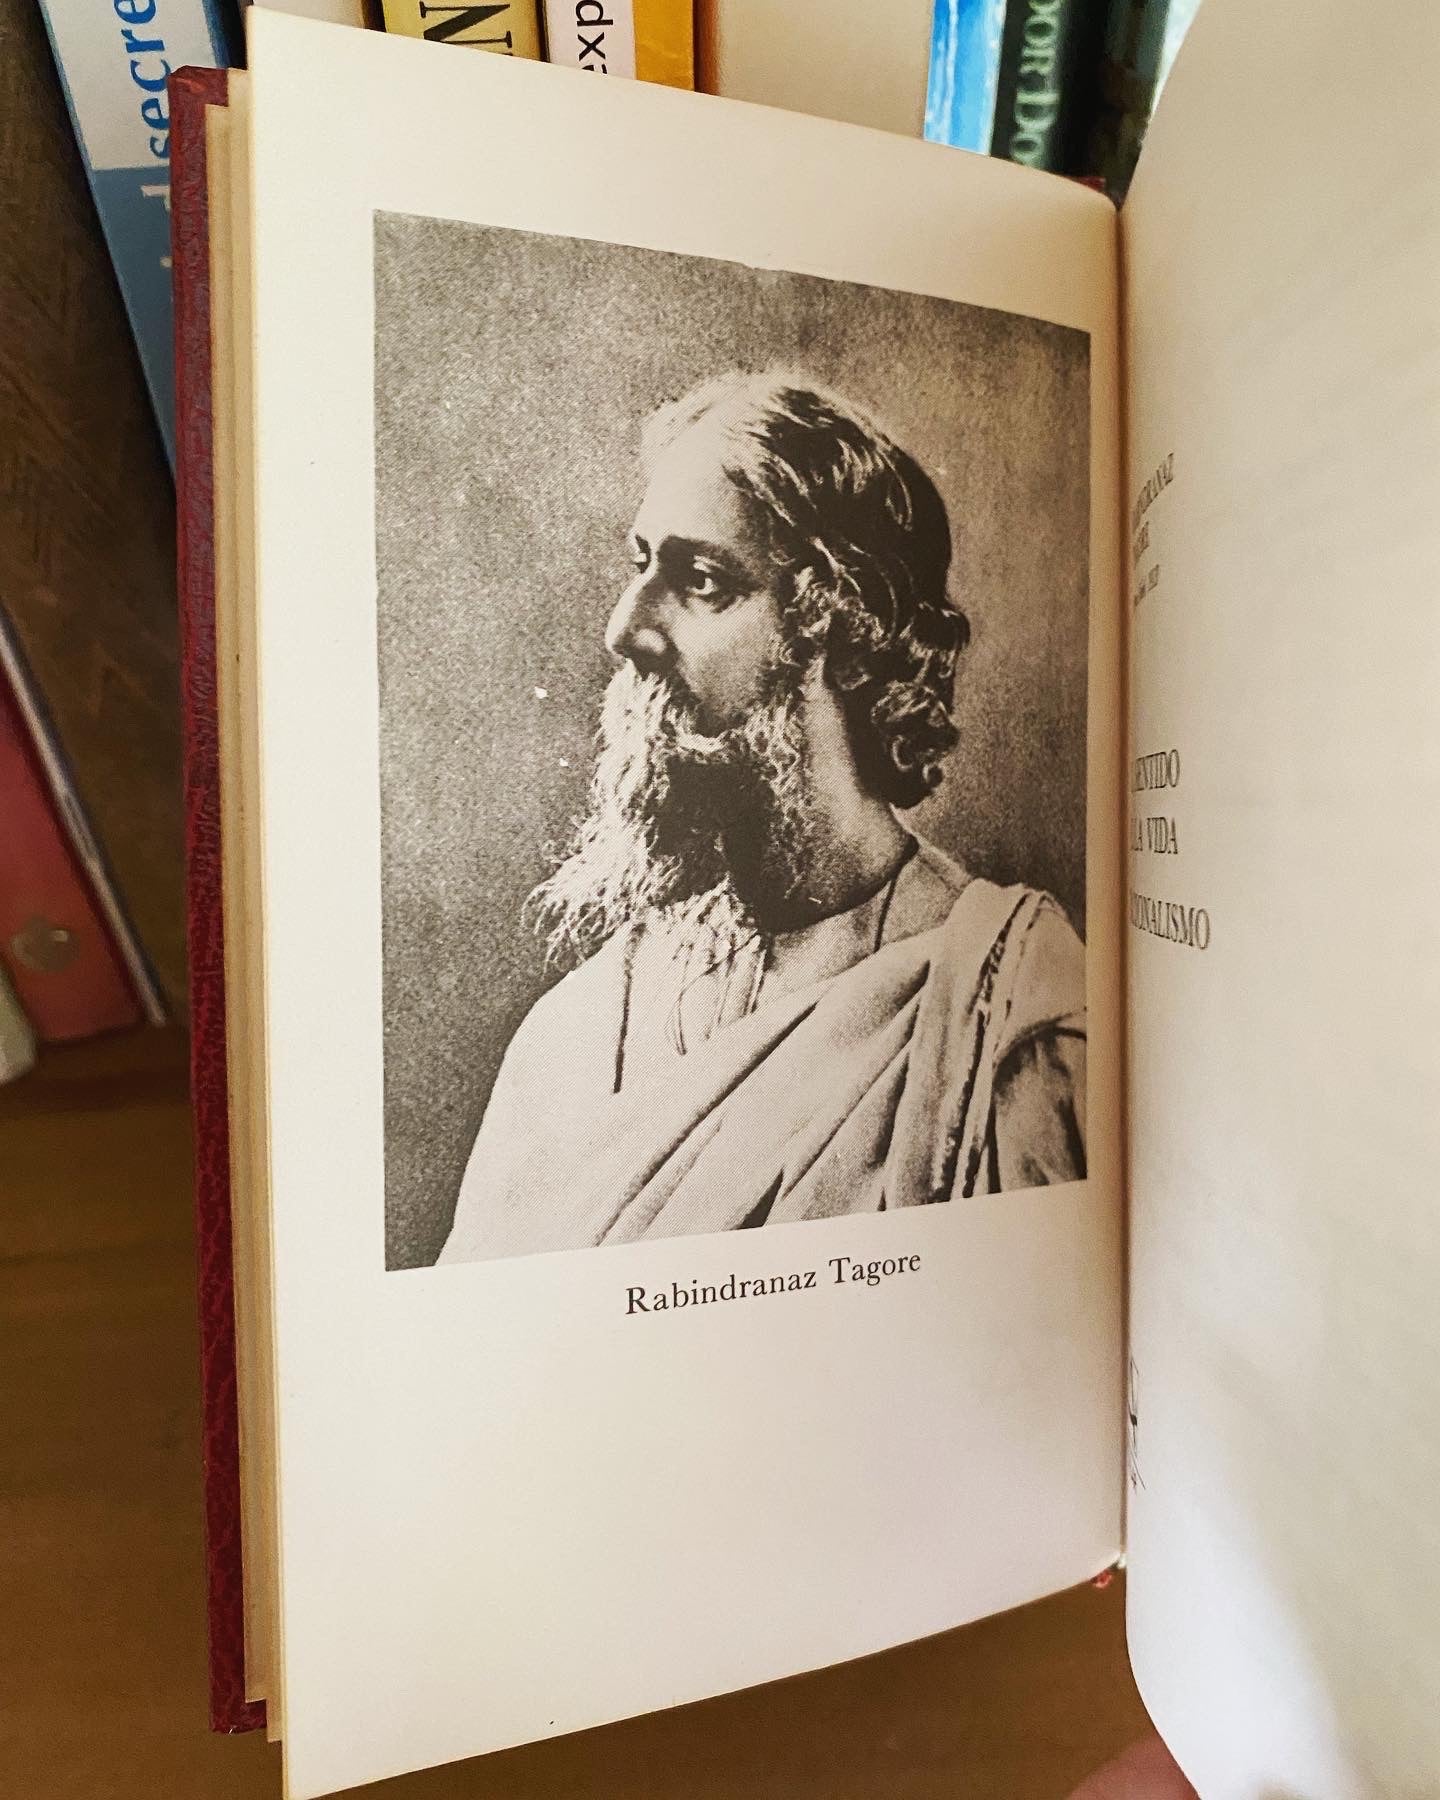 El sentido de la Vida, Rabindranath Tagore